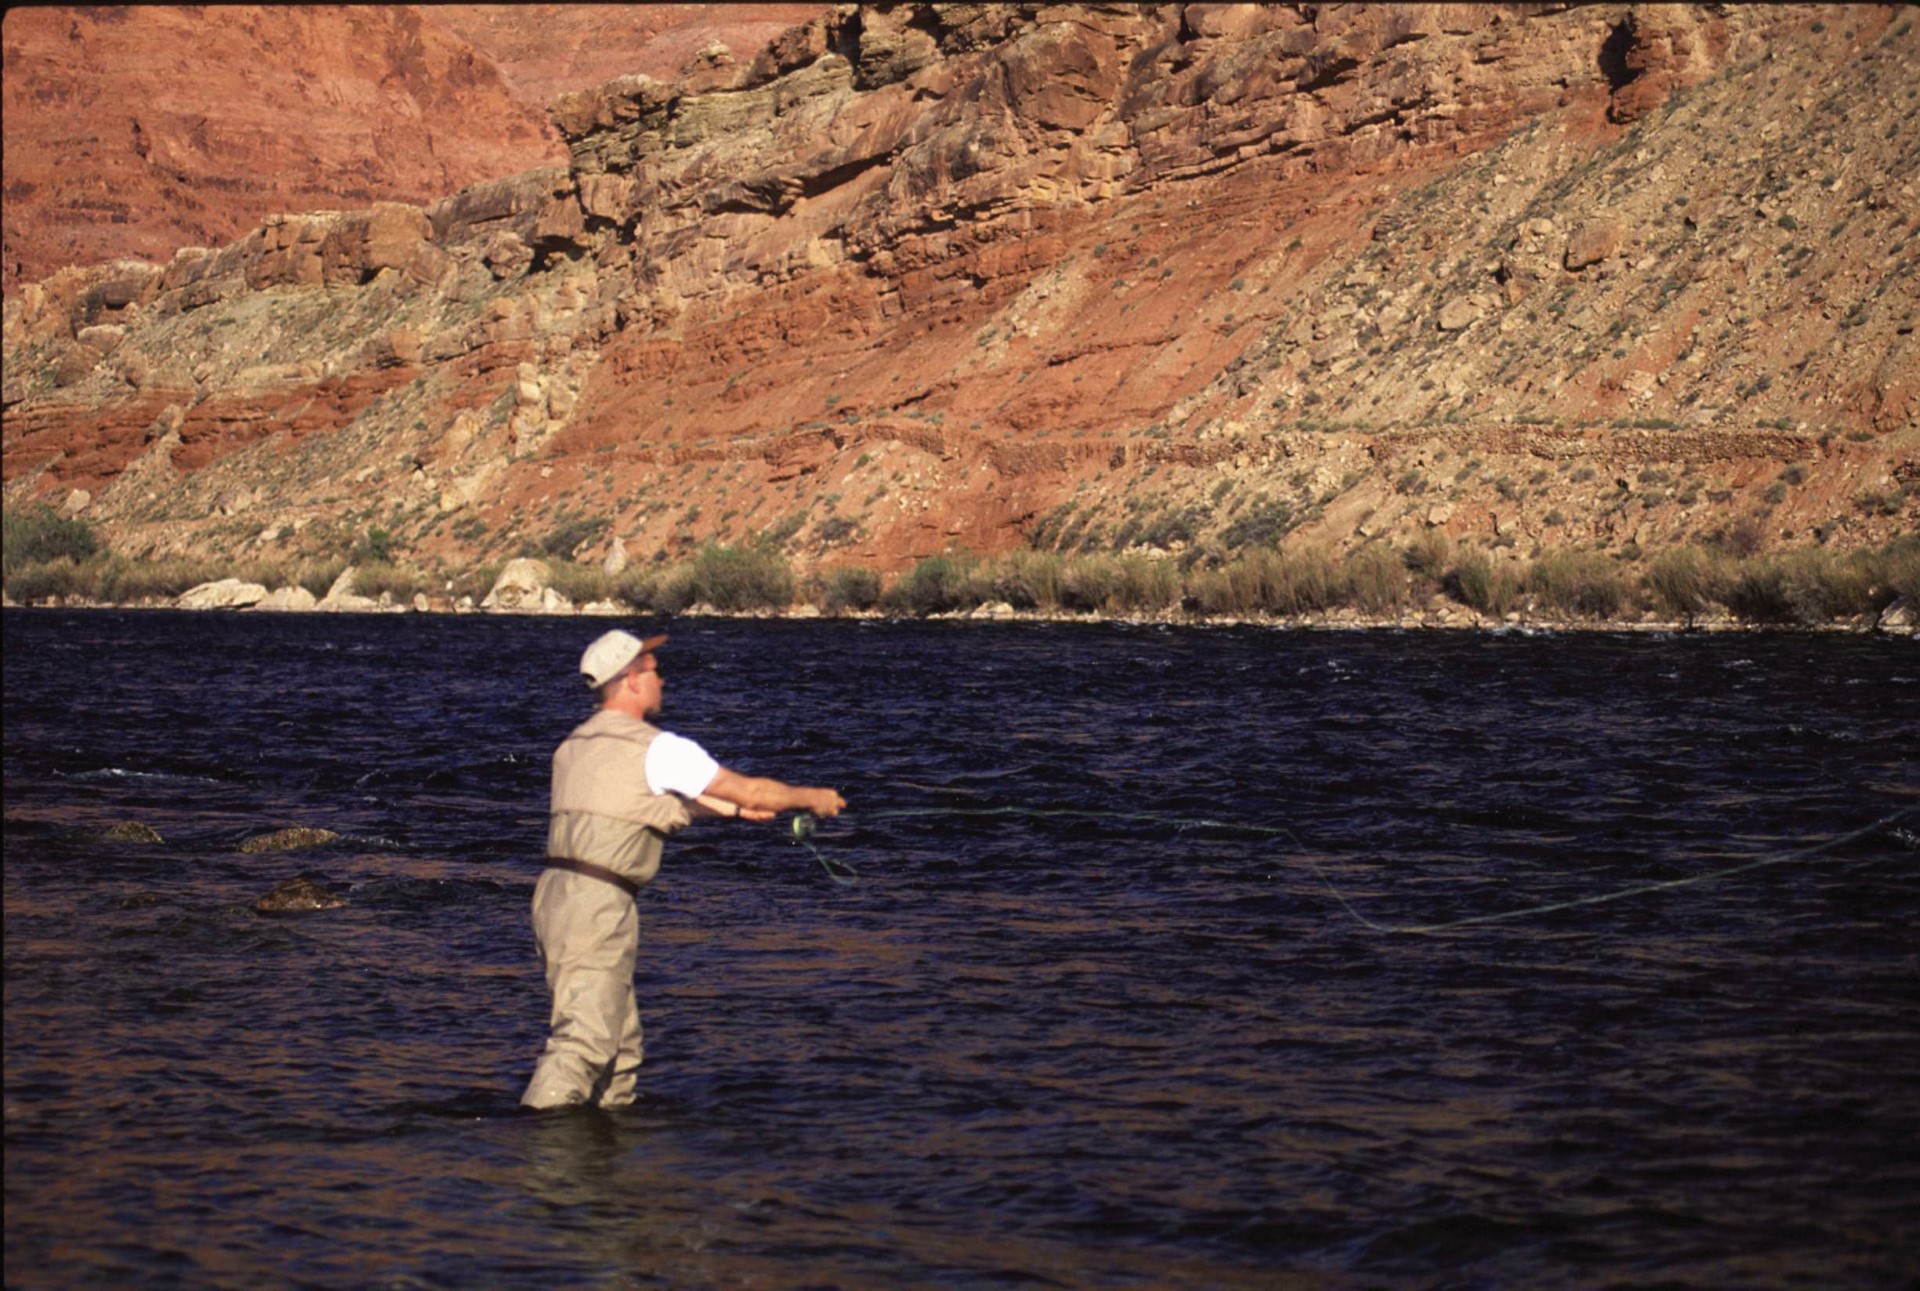 Fliegenfischen im Colorado River. Photo Credit: Arizona Office of Tourism